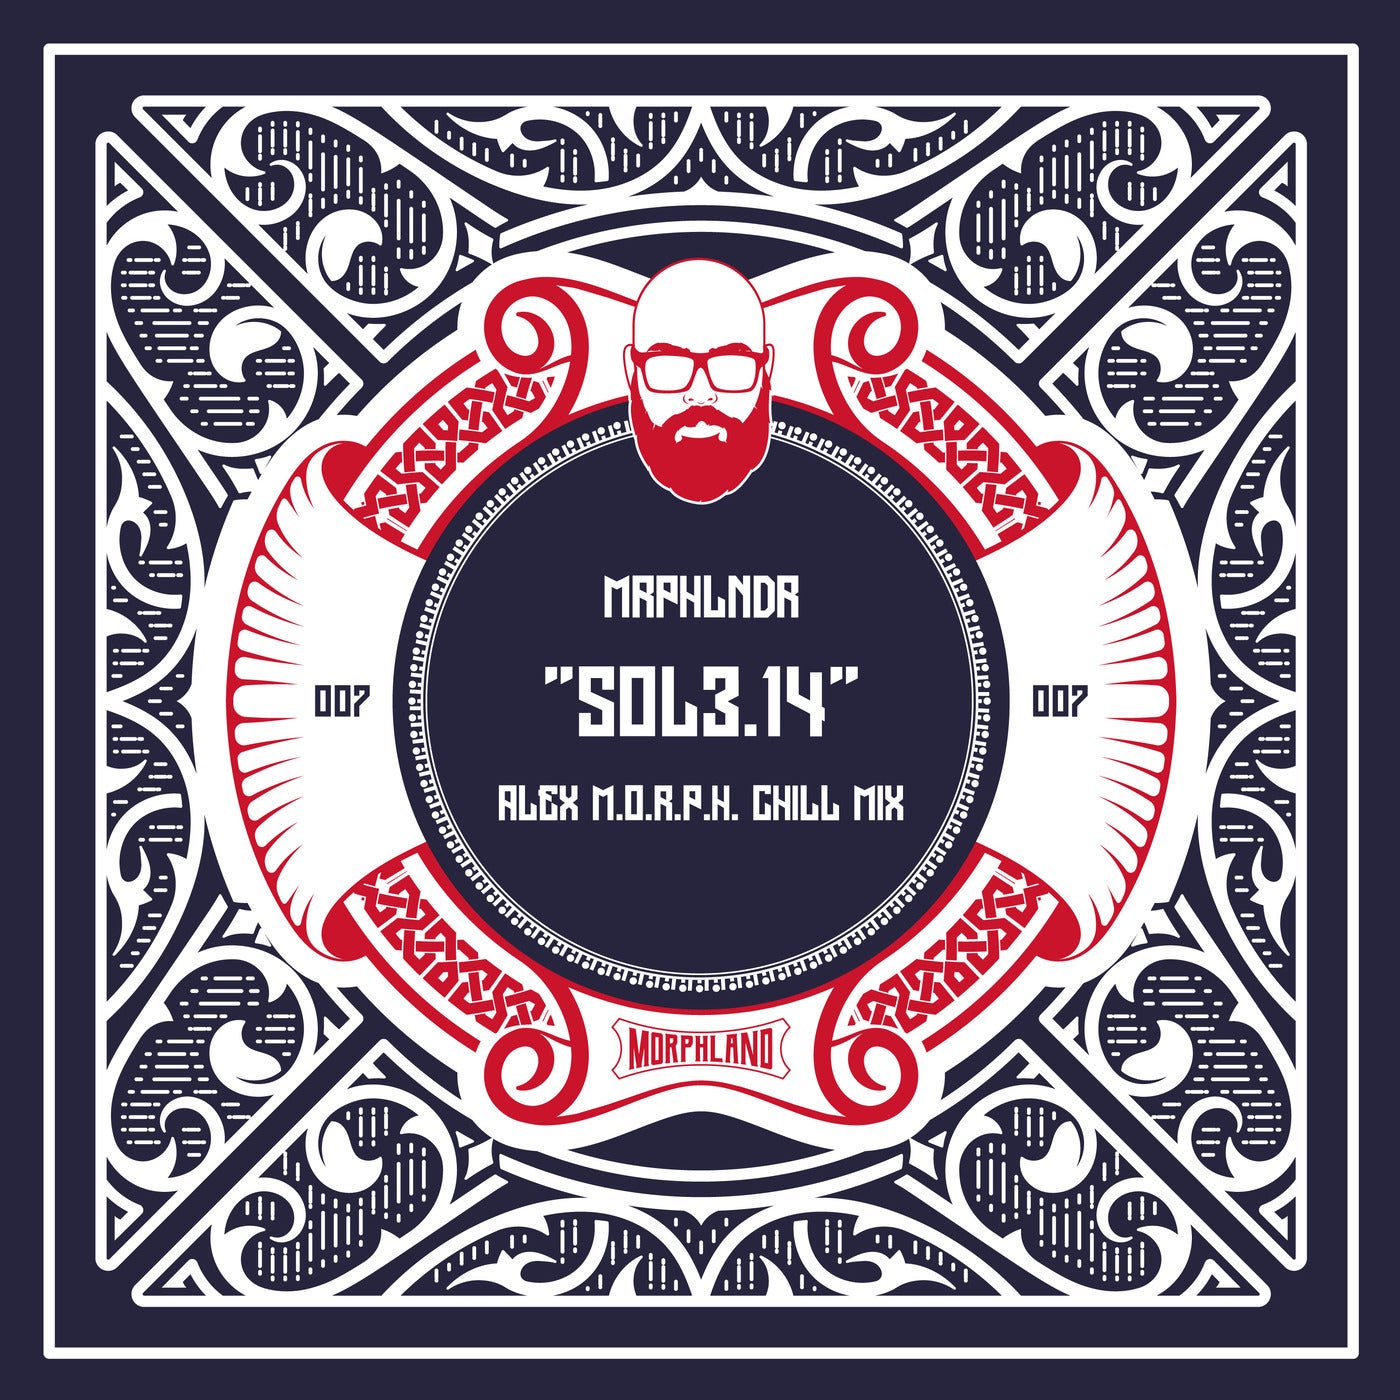 Sol3.14 - Alex M.O.R.P.H. Chill Mix